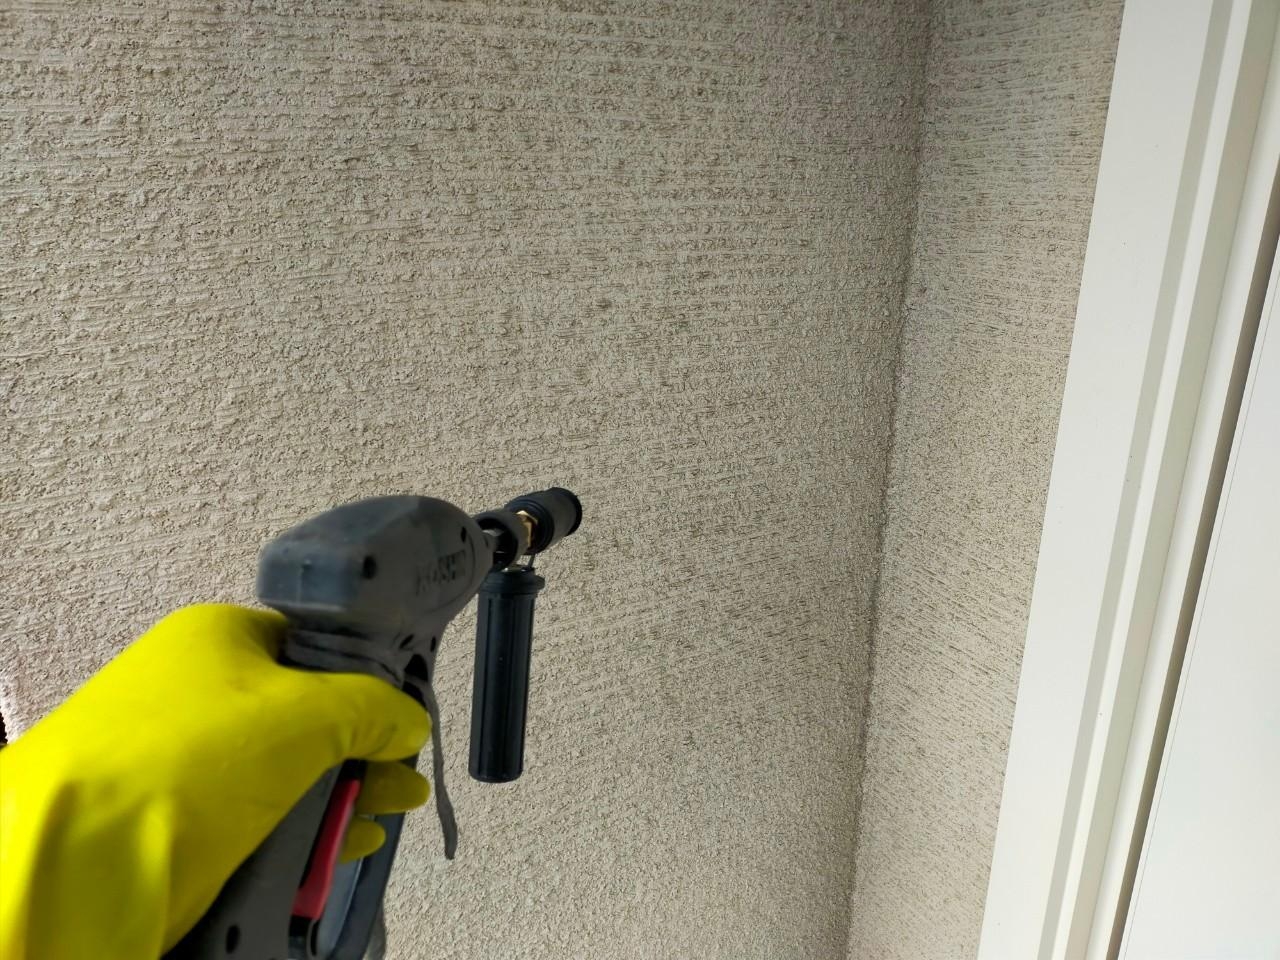 福岡県福岡市東区照葉のU様邸で汚れもピカピカに新築時のデザインを再現する外壁塗装を行いました。屋上の防水工事もばっちりです。12/28完成です。【ホームページより】